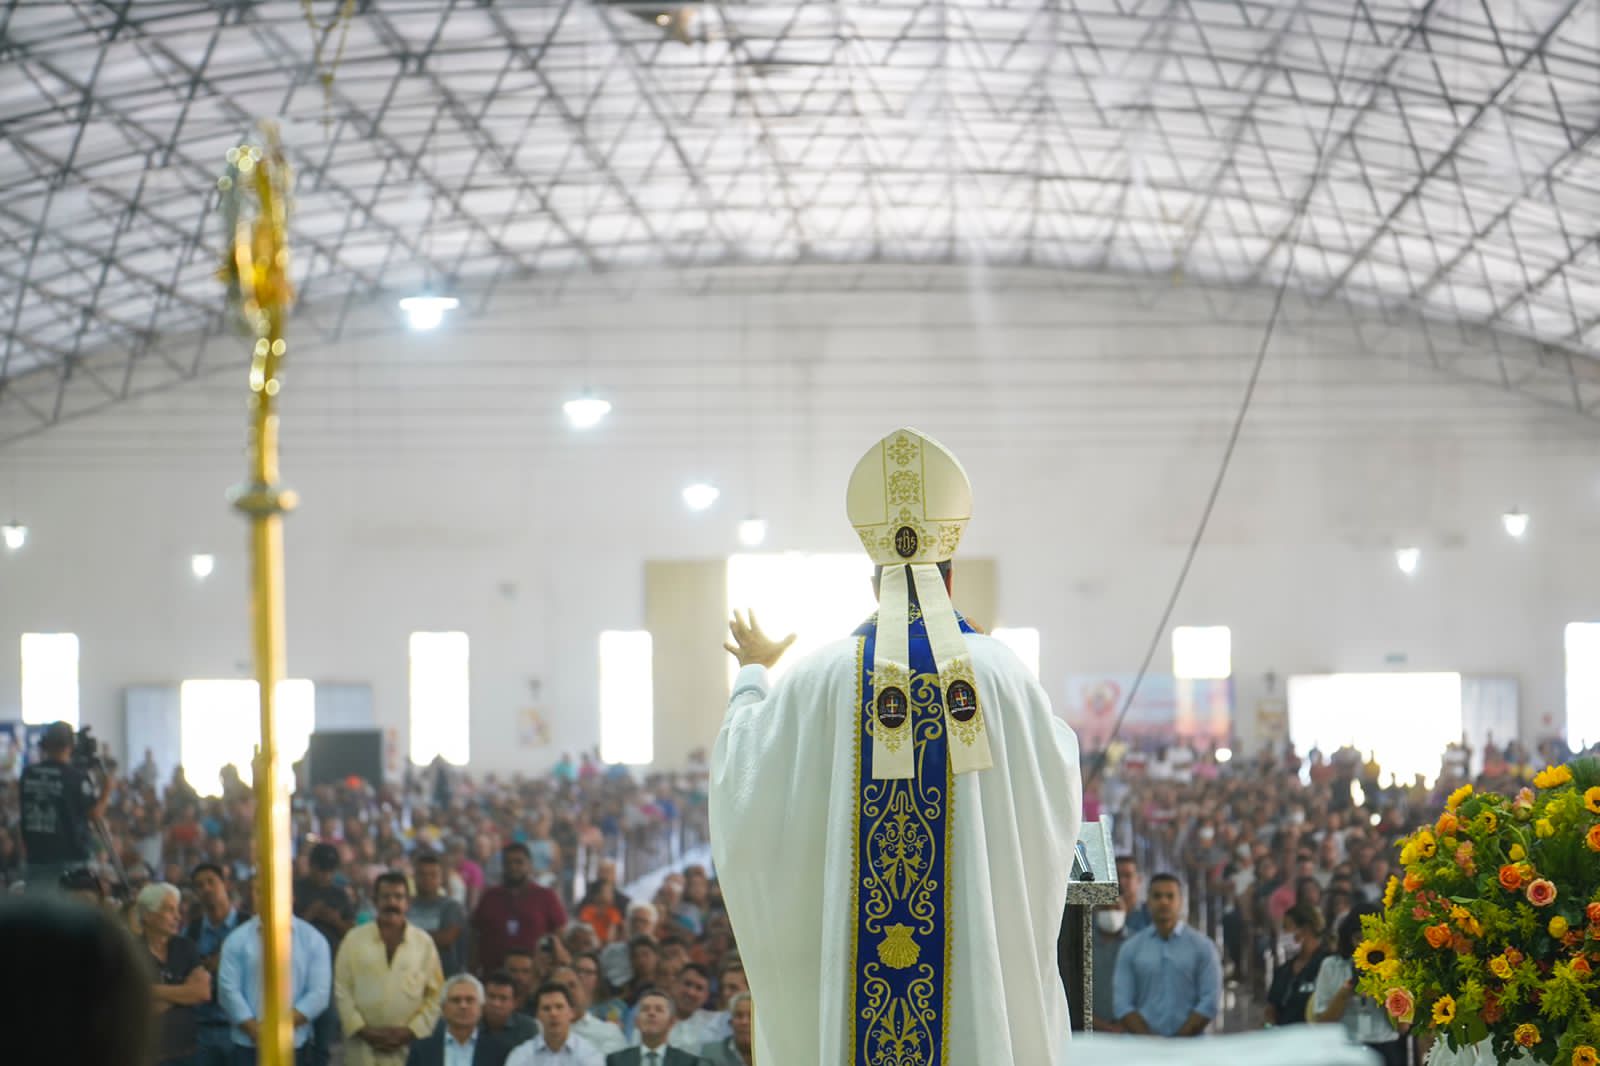 Governador Ronaldo Caiado acompanha multidão durante missa na Romaria de Muquém: "Agradecer a intercessão de Nossa Senhora"